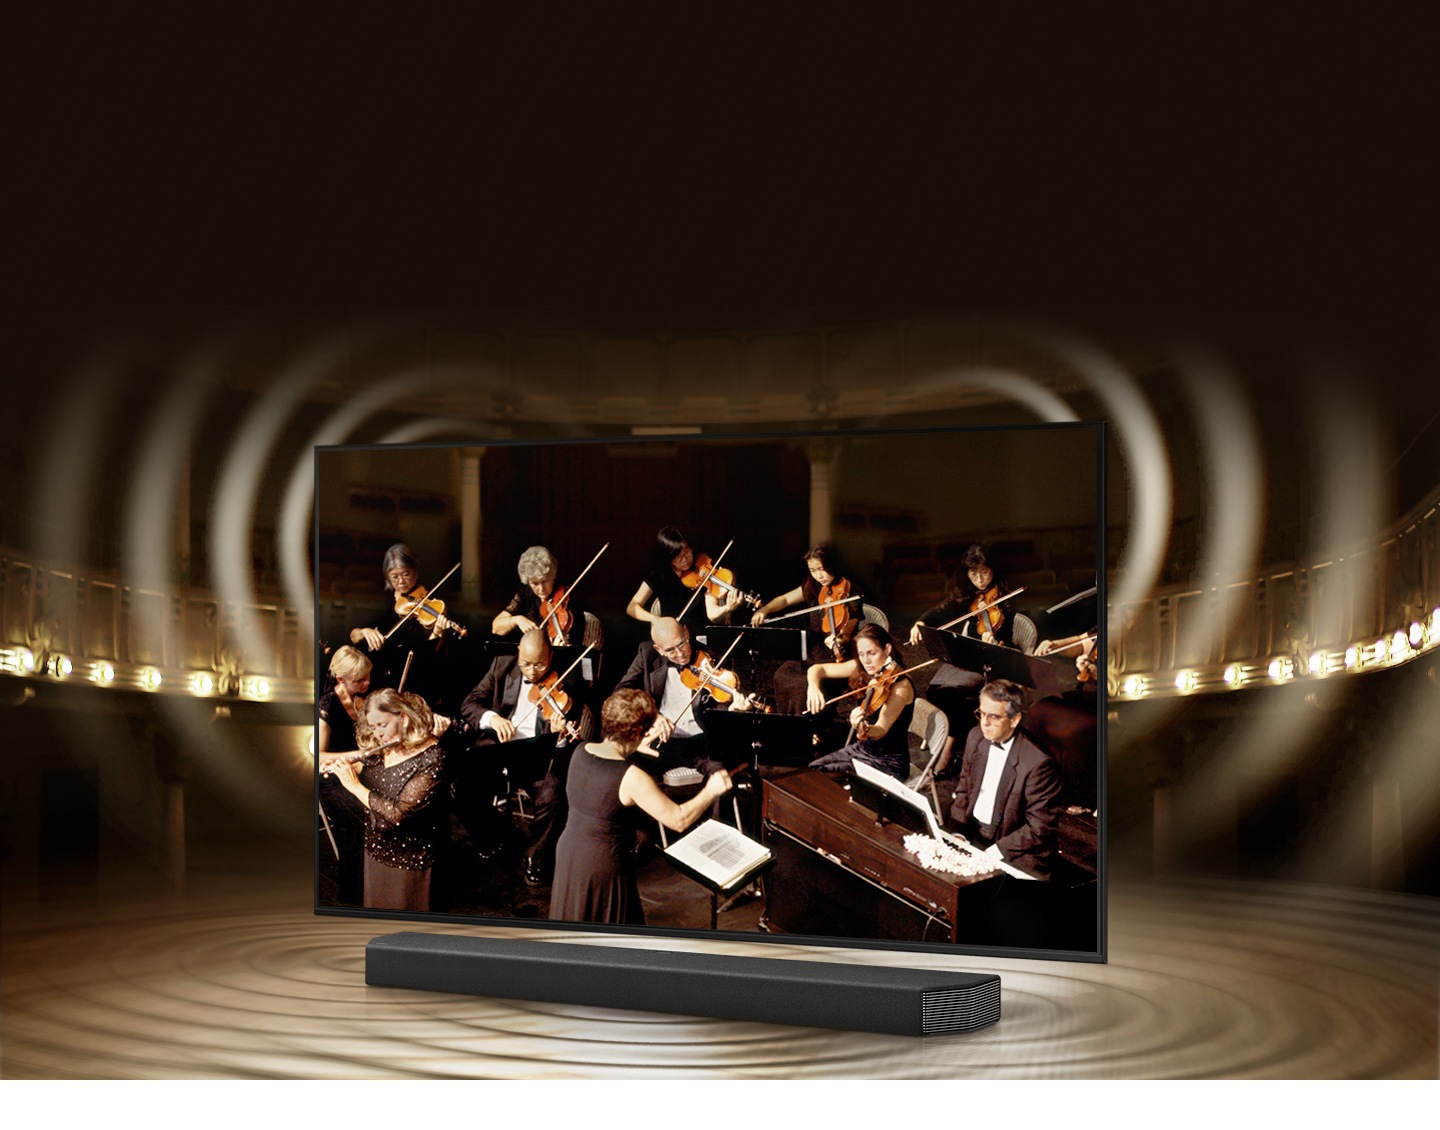 تُظهر رسومات الموجات الصوتية المحاكاة من التلفزيون ومكبر الصوت تقنية Q Symphony أثناء تشغيل الصوت معًا.